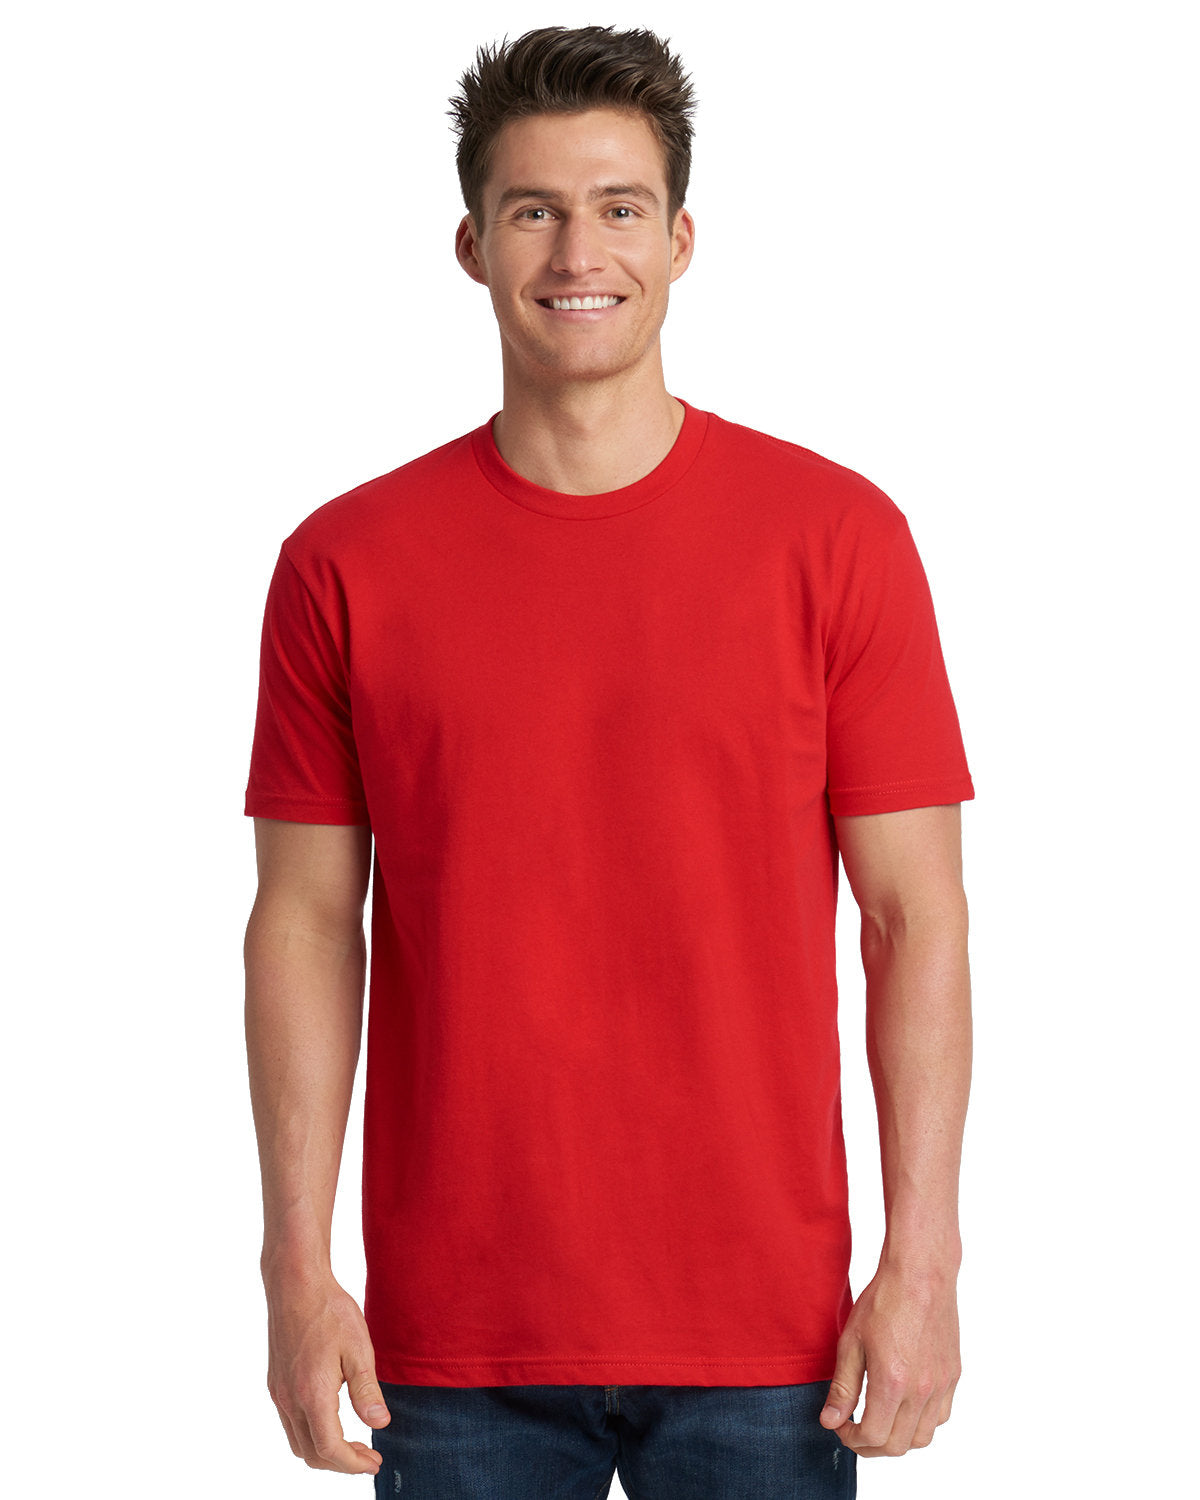 NL3600-Unisex Cotton T-Shirt